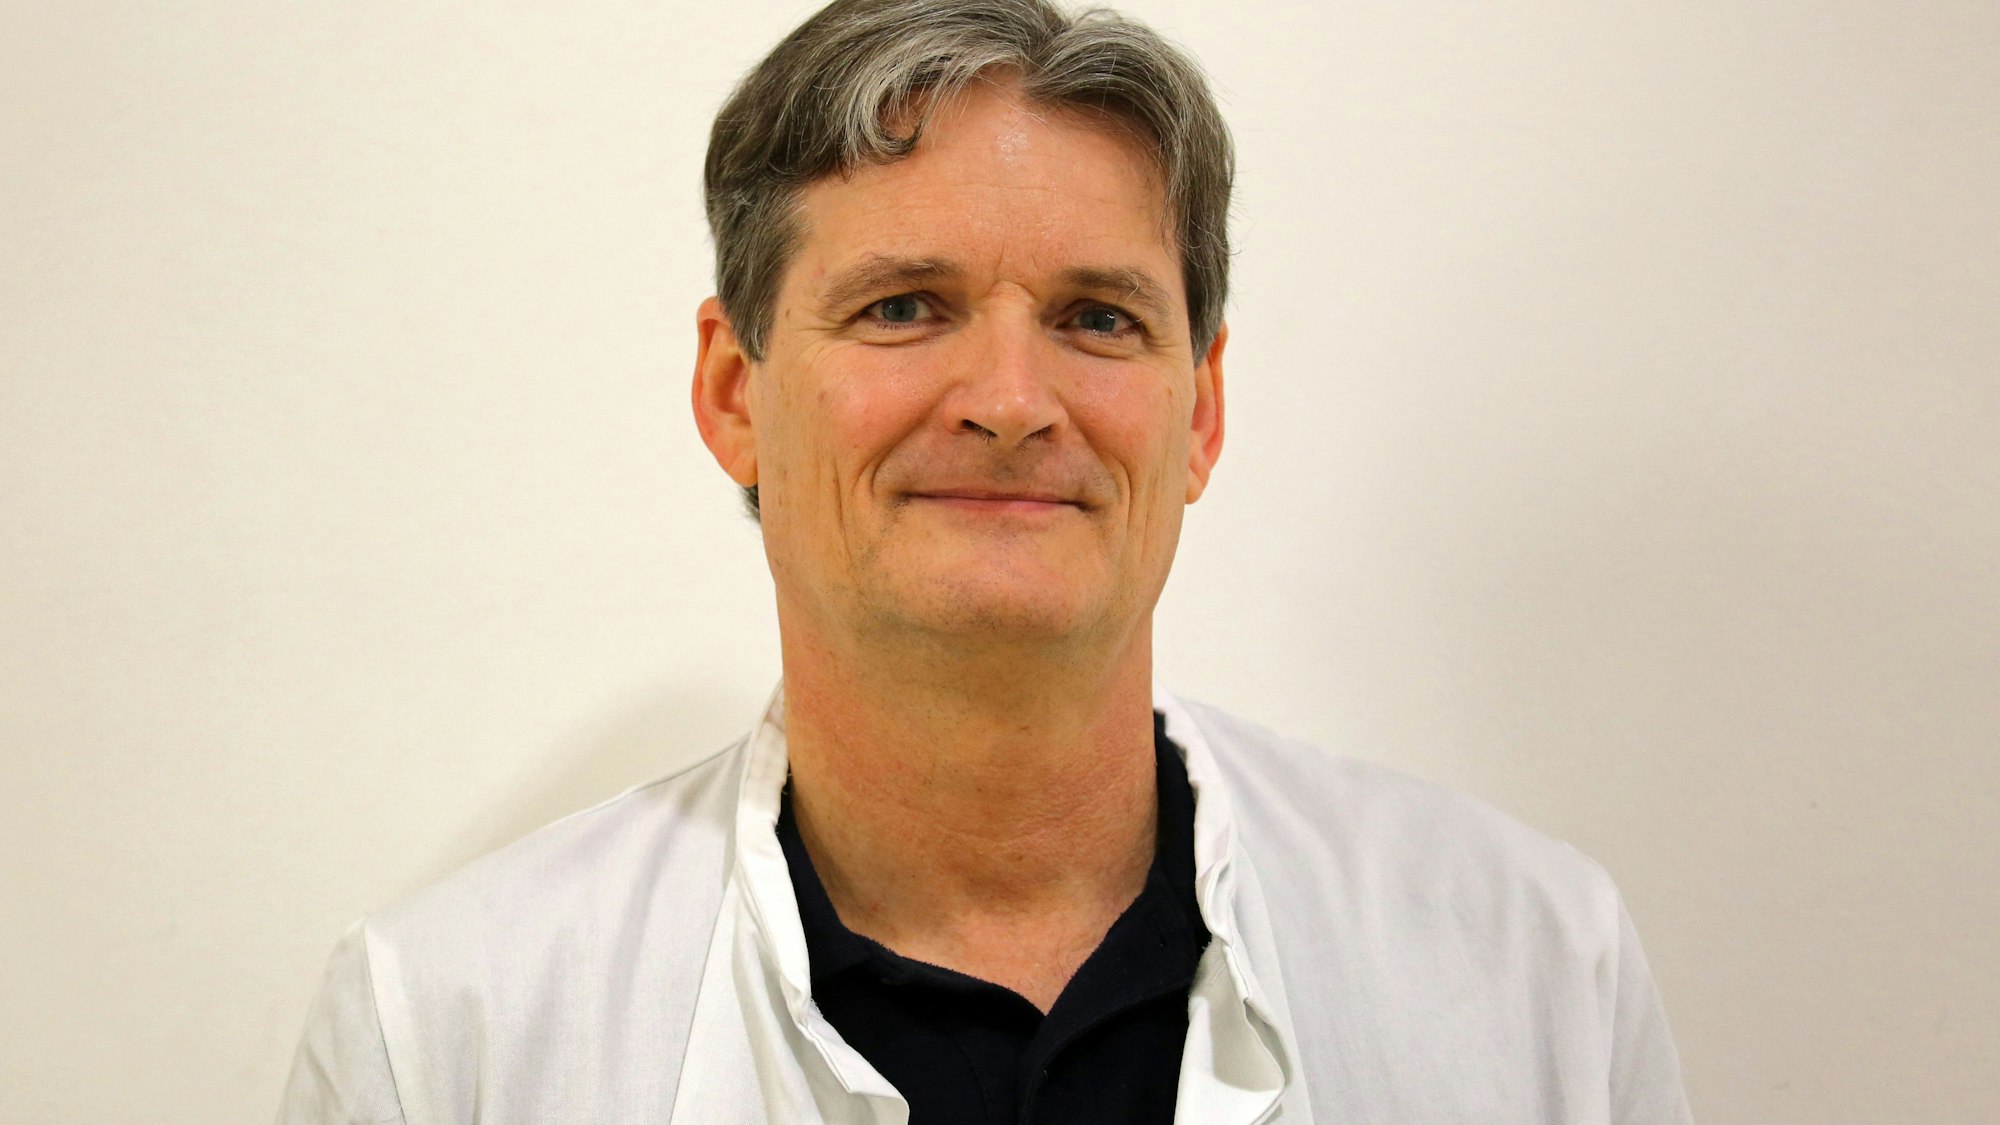 Gernot Rücker, Ärztlicher Leiter an der Klinik und Poliklink für Anästhesiologie und Intensivmedizin der Universitätsmedizin Rostock im weißen Kittel